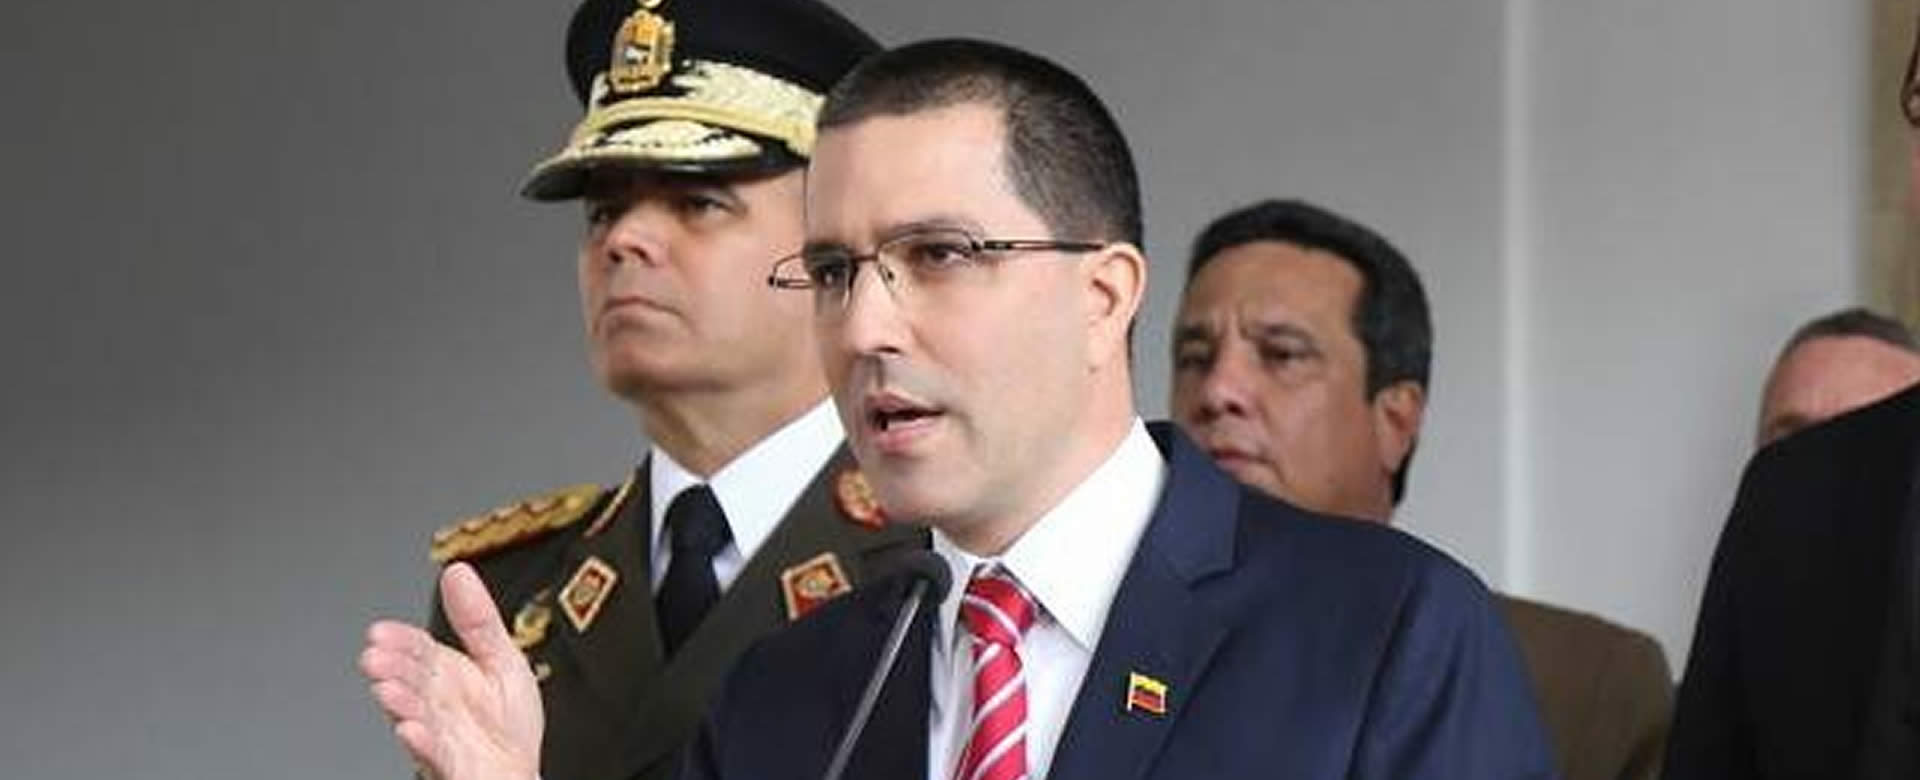 Arreaza condena sanciones del TIAR contra funcionarios venezolanos